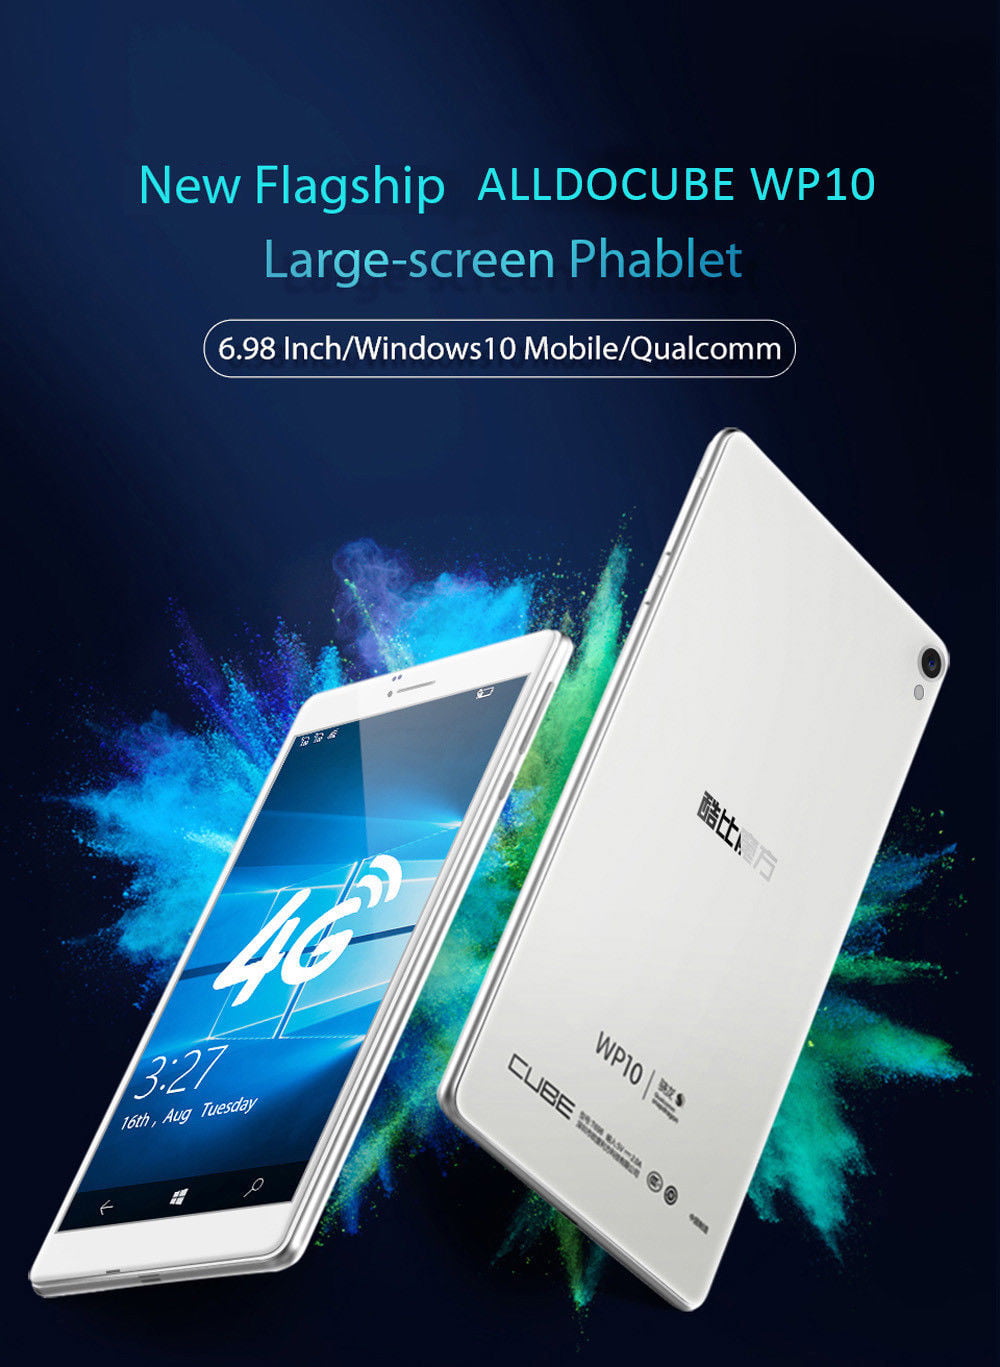 Windows 10 Tablet Pc Flash Sales 10.1 Inch 2gb Ddr3 +32gb W8100